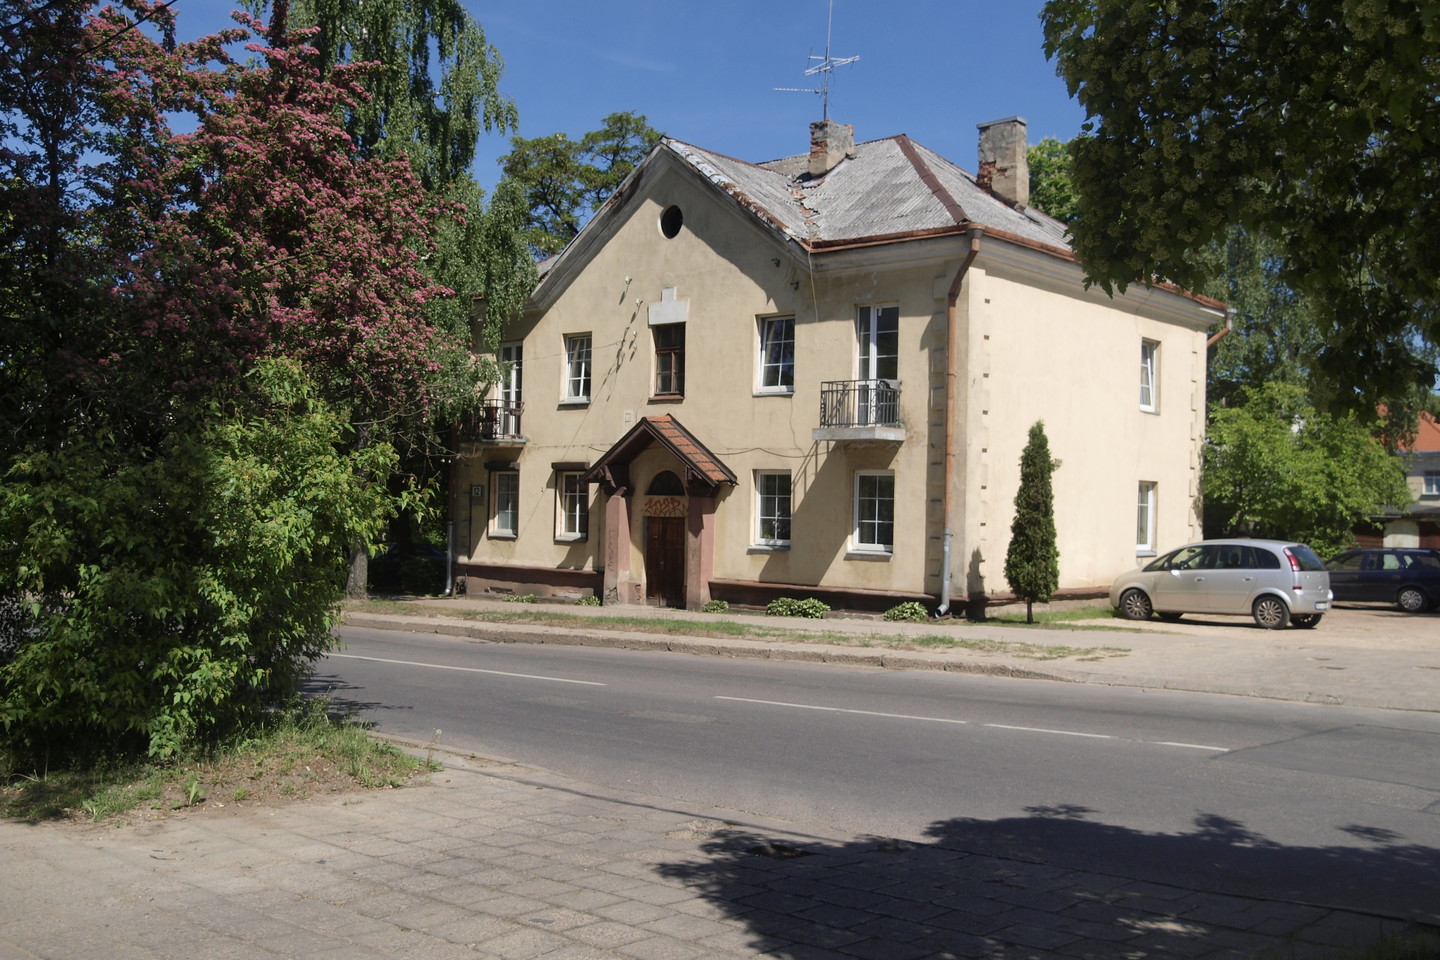  Asbesto šiferiu dengtų namų Vilniuje, Antakalnio rajone - daugybė. <br> A.Srėbalienės nuotr. 